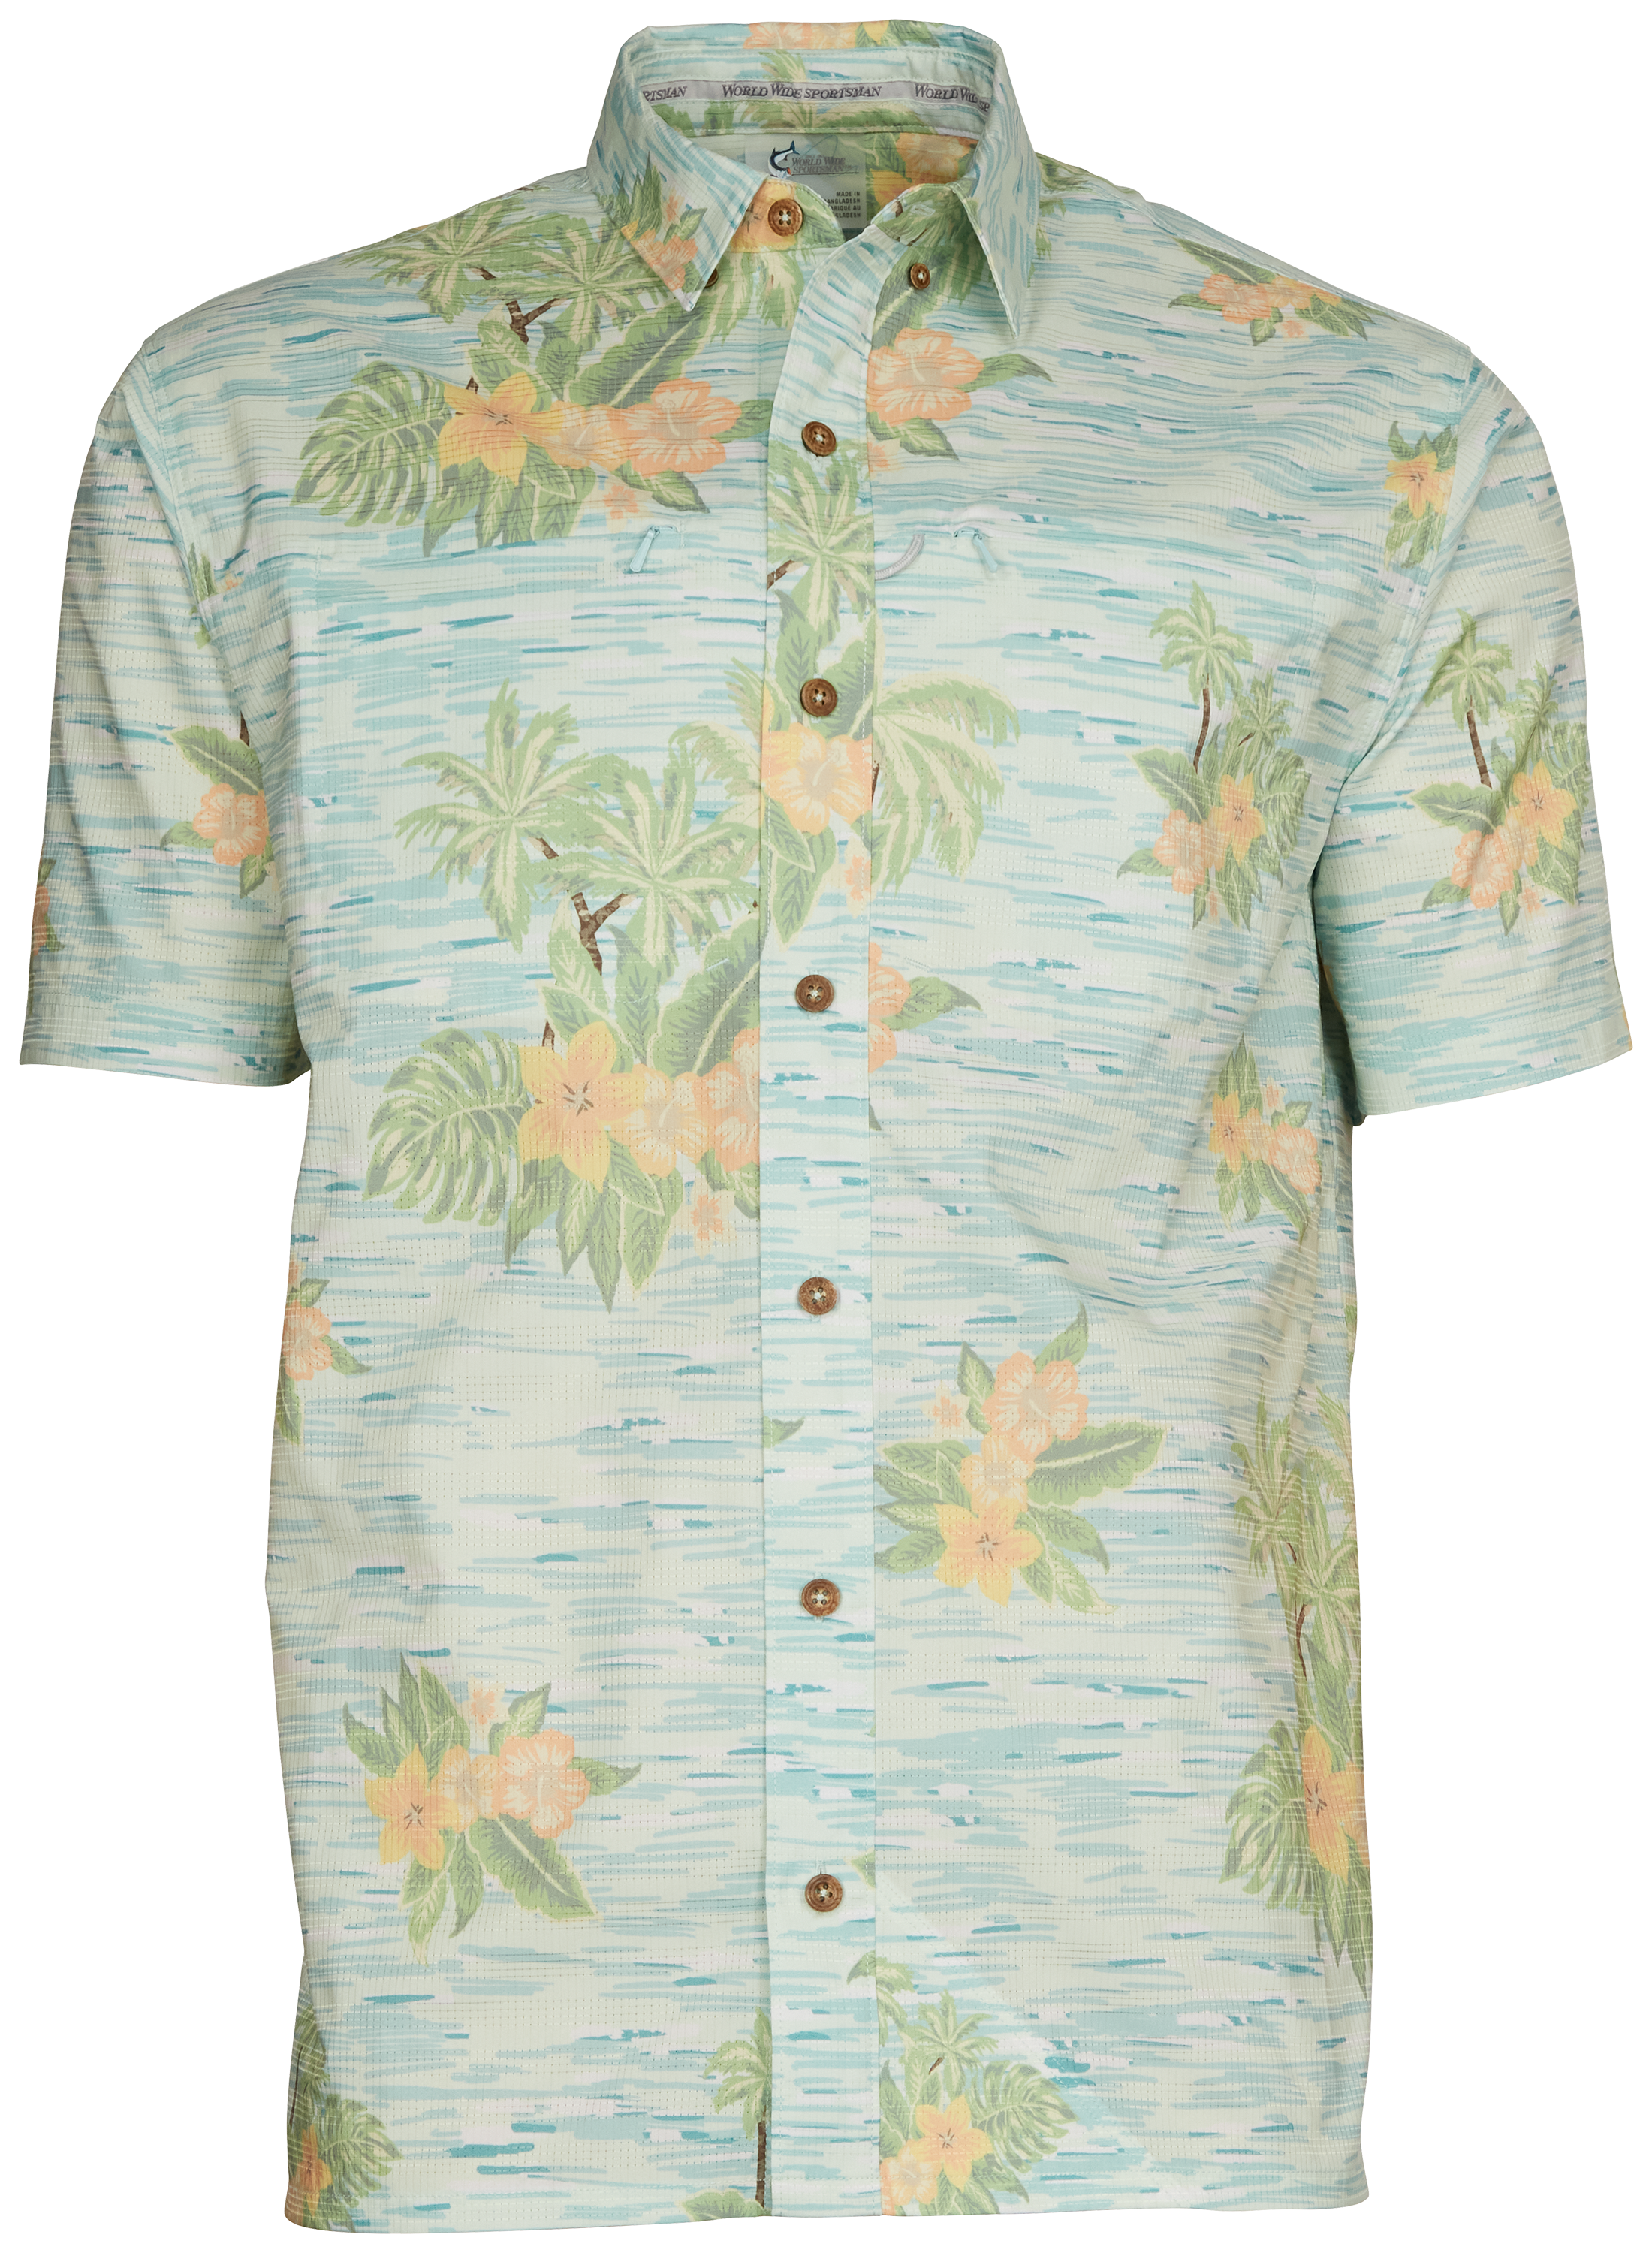 World Wide Sportsman Seacrest Print Short-Sleeve Button-Down Shirt for Men - Blue Hawaiian - S